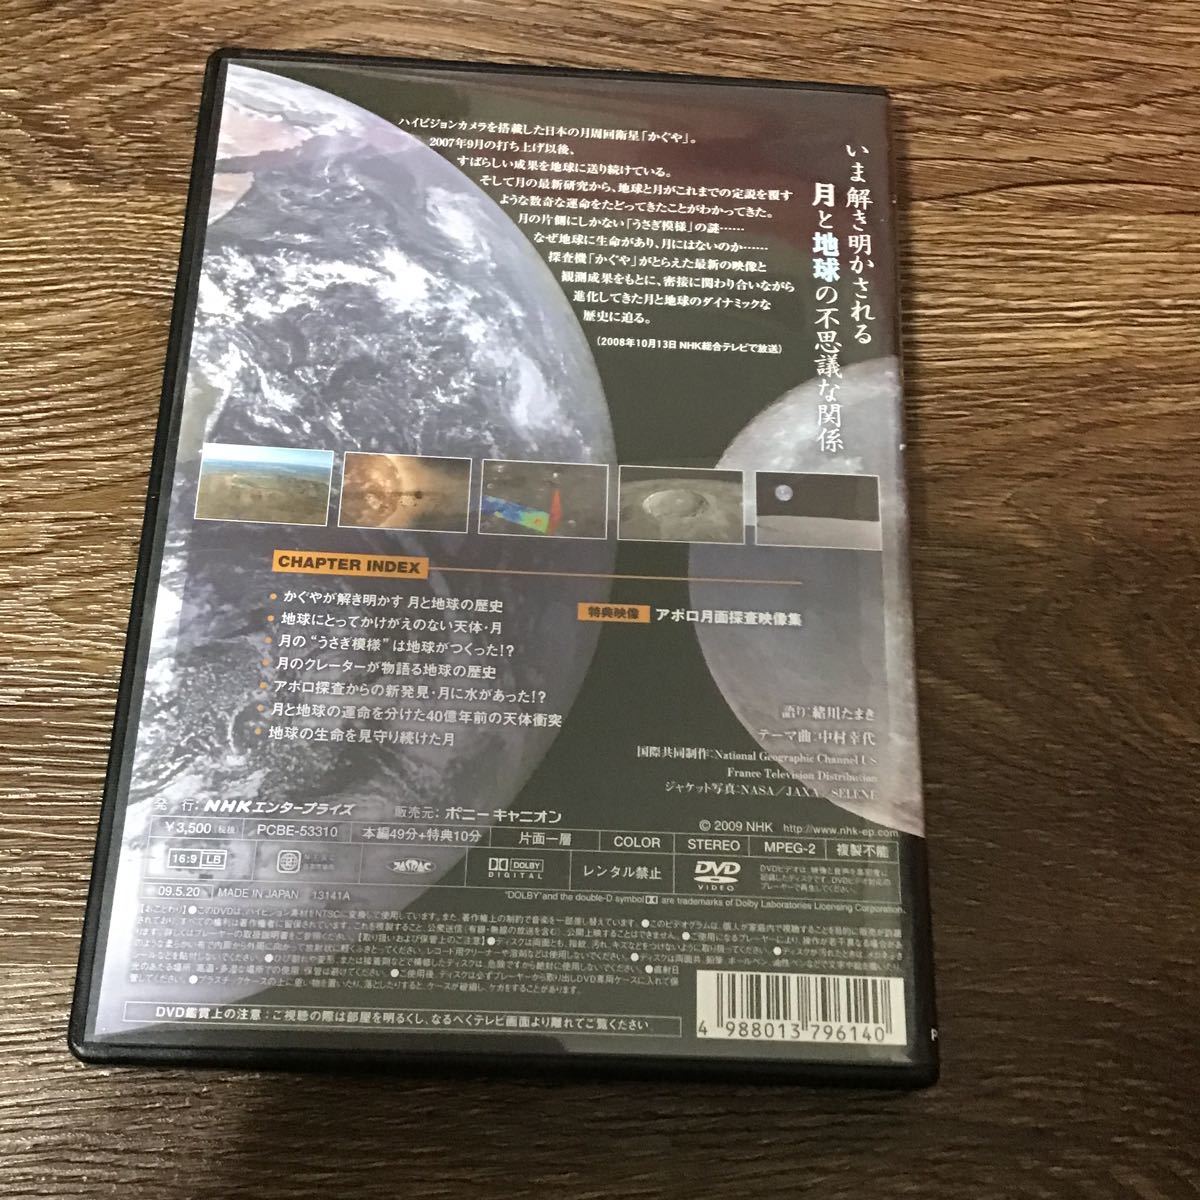 NHK специальный месяц . земля 46 сто миллионов год. история ~.. машина ... новейший комментарий ~ ( хобби | образование ). река Tama .( язык .) DVD